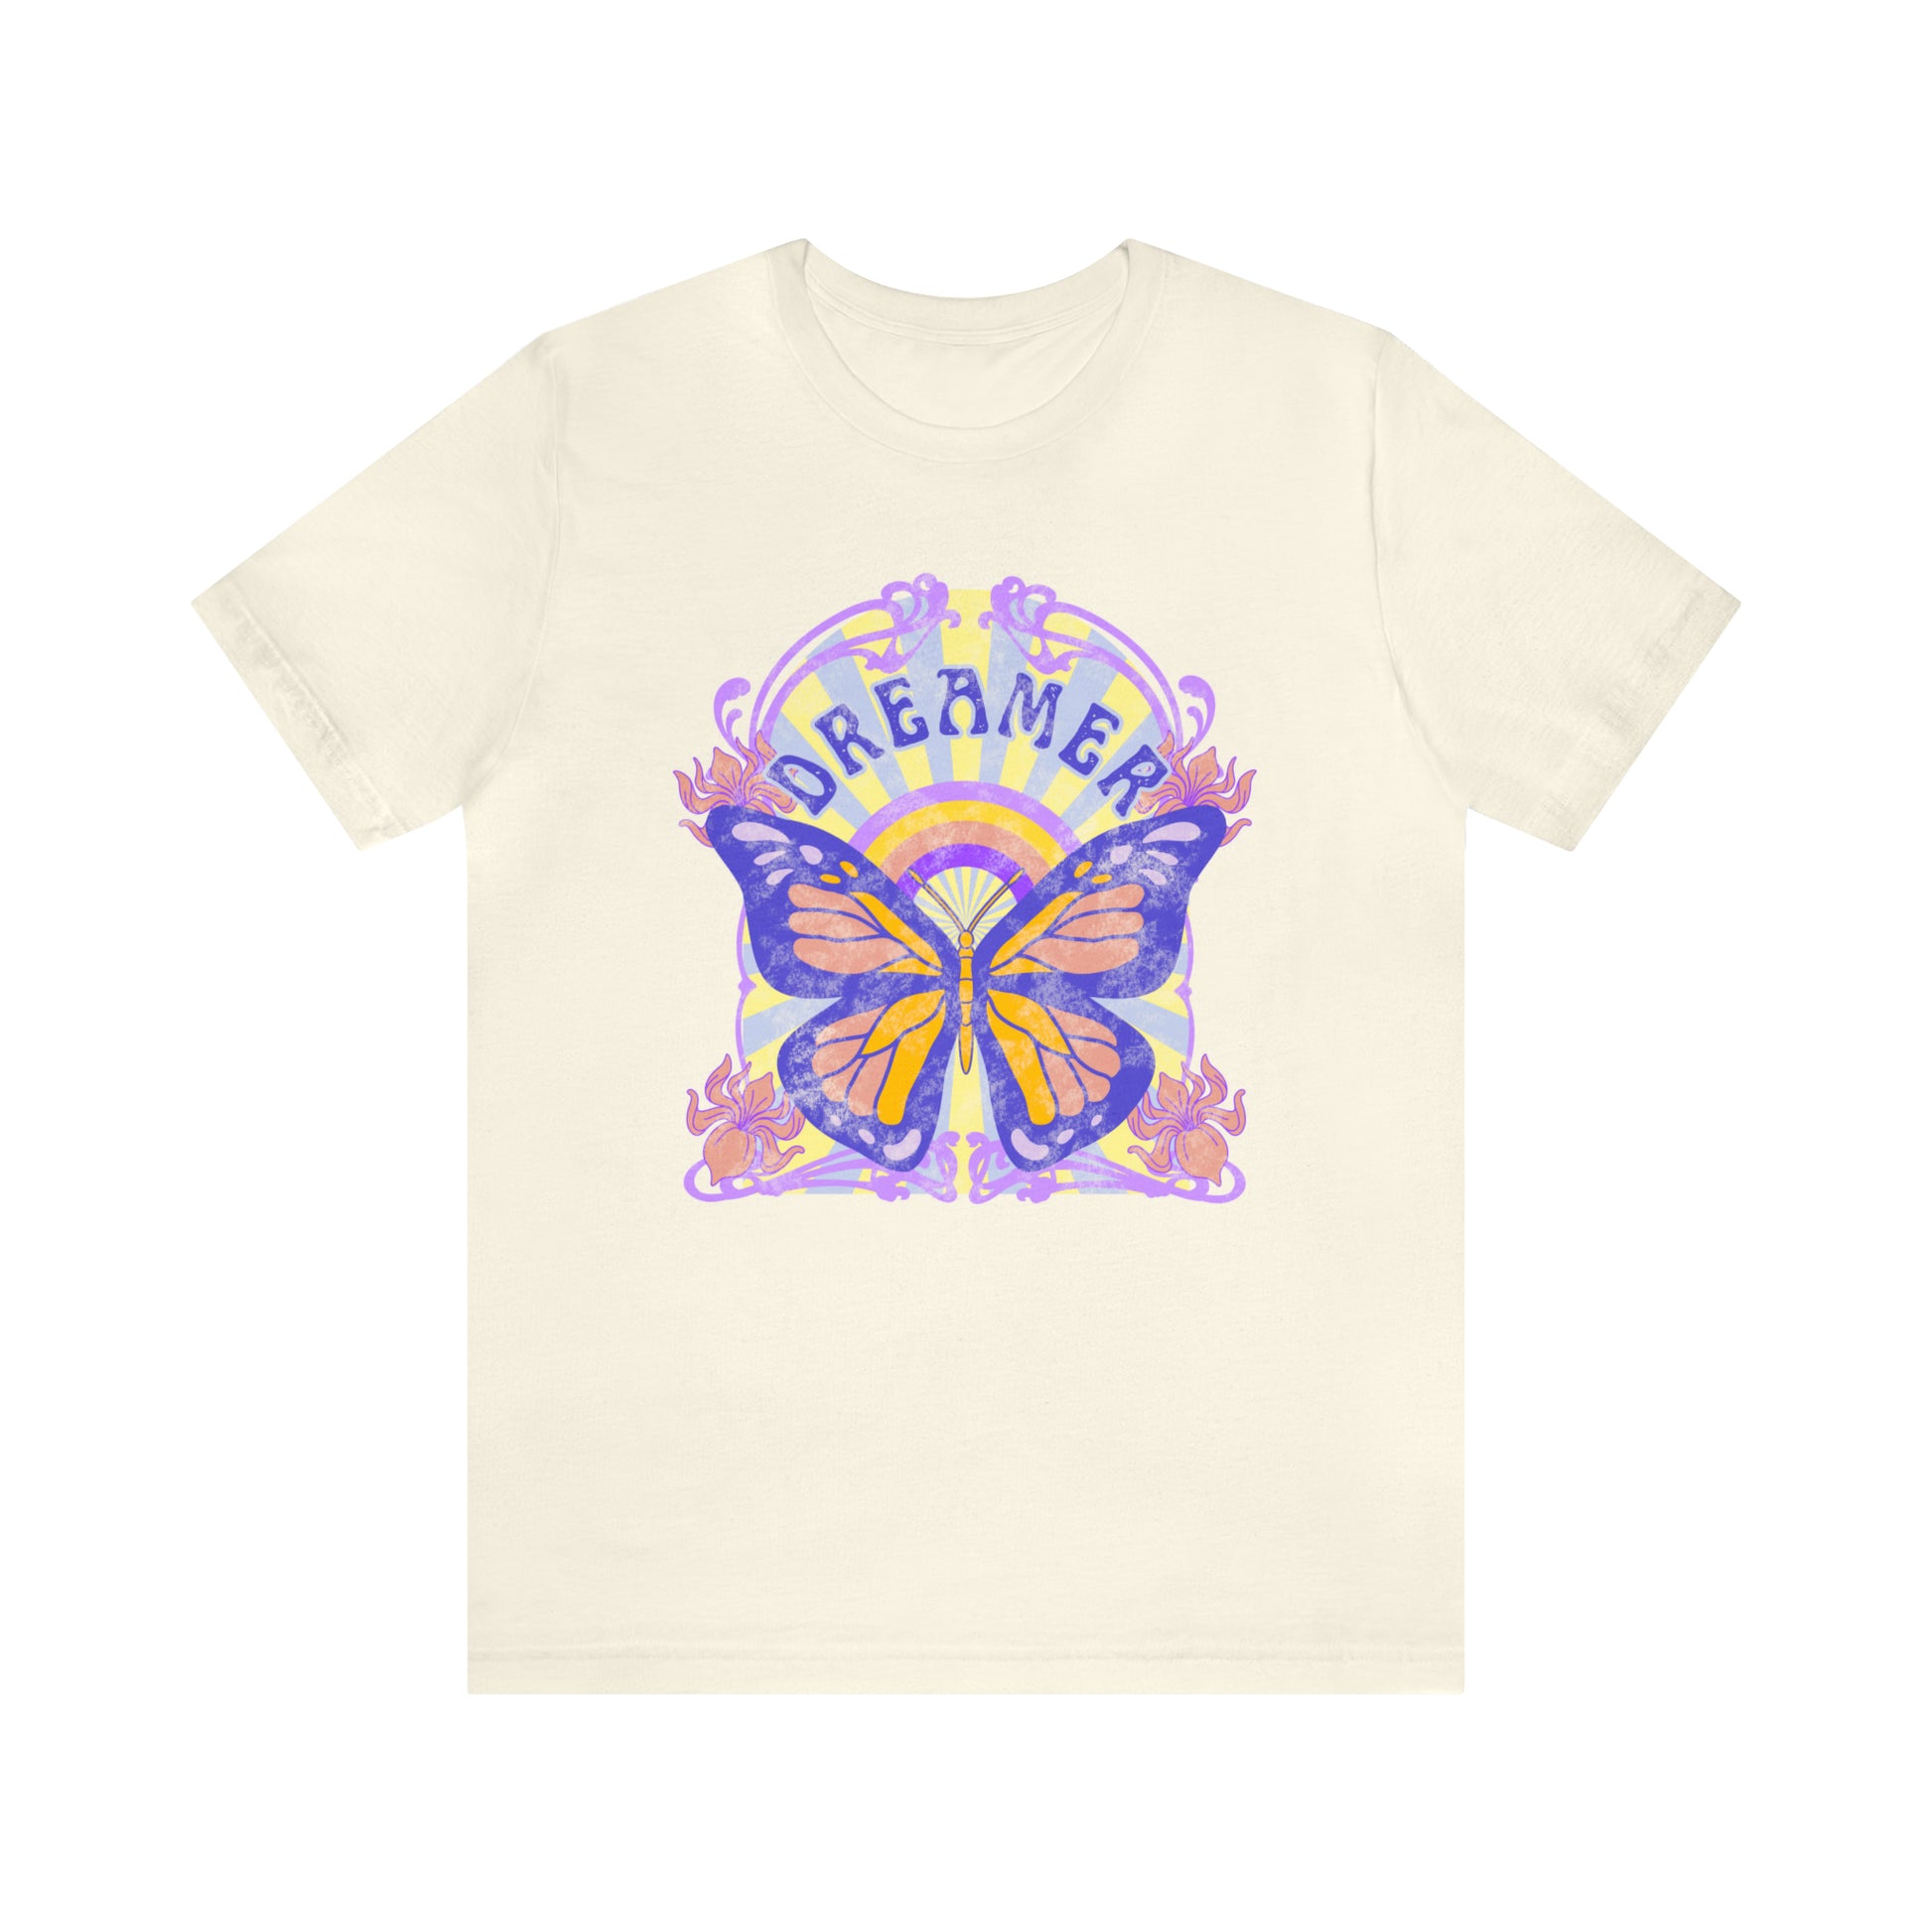 Dreamer Butterfly Art Nouveau Shirt Bella & Canvas - Fractalista Designs